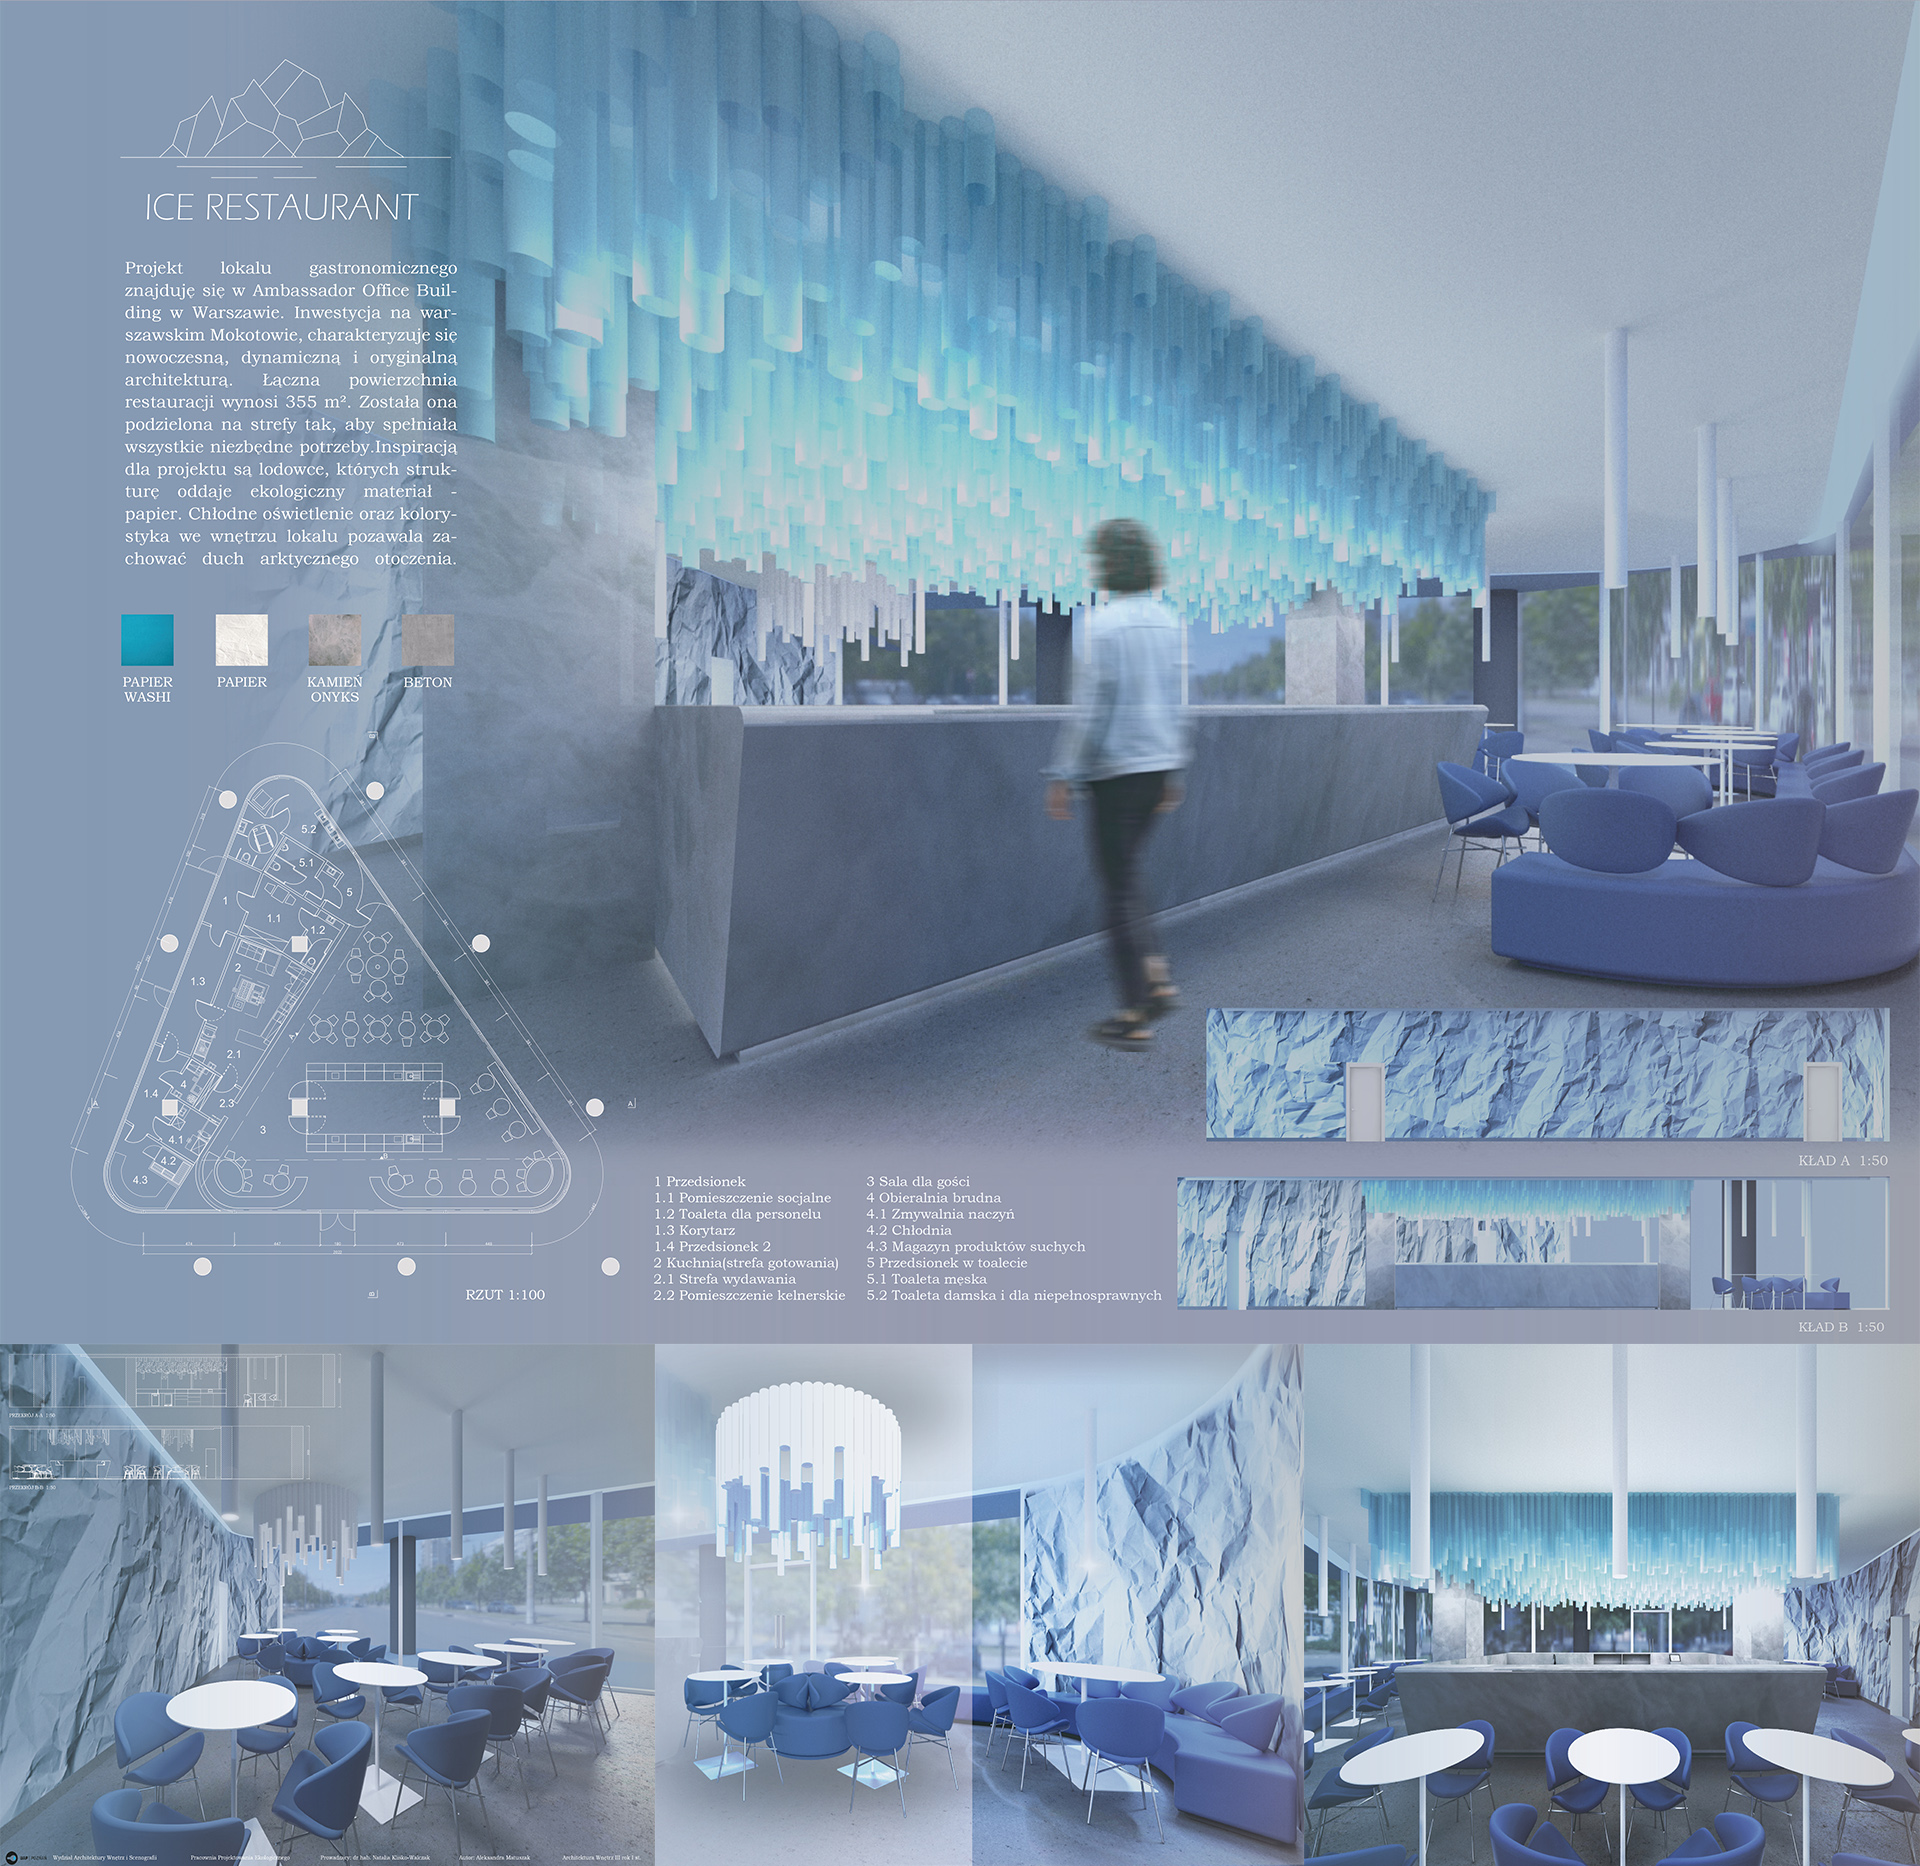 Obraz zawierający rysunki techniczne oraz wizualizacje projektowanych wnętrz, które przedstawiają: ladę barową oraz miejsce spożywania posiłków. Wnętrze w szaro niebieskich kolorach przypominające bryły lodu.